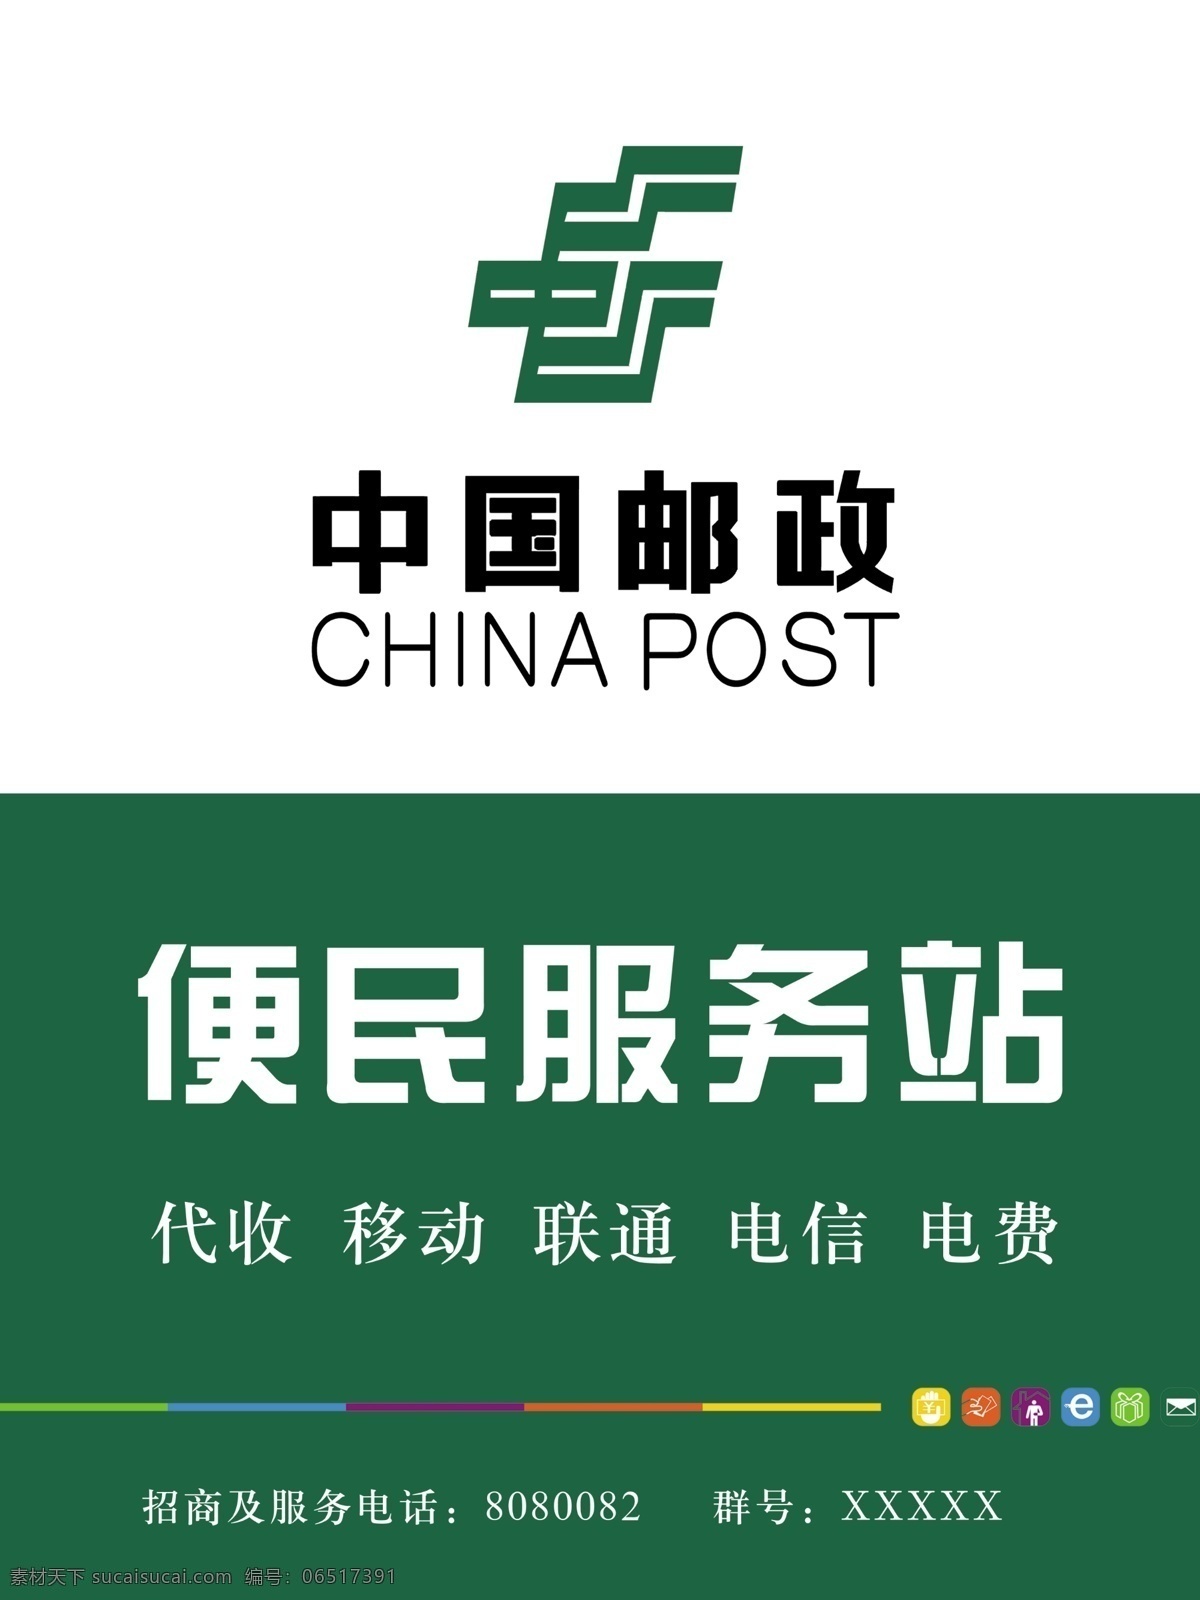 中国邮政 邮政局 中国邮政标志 便民服务站 代收移动 联通 电信 电费 海报 源文件